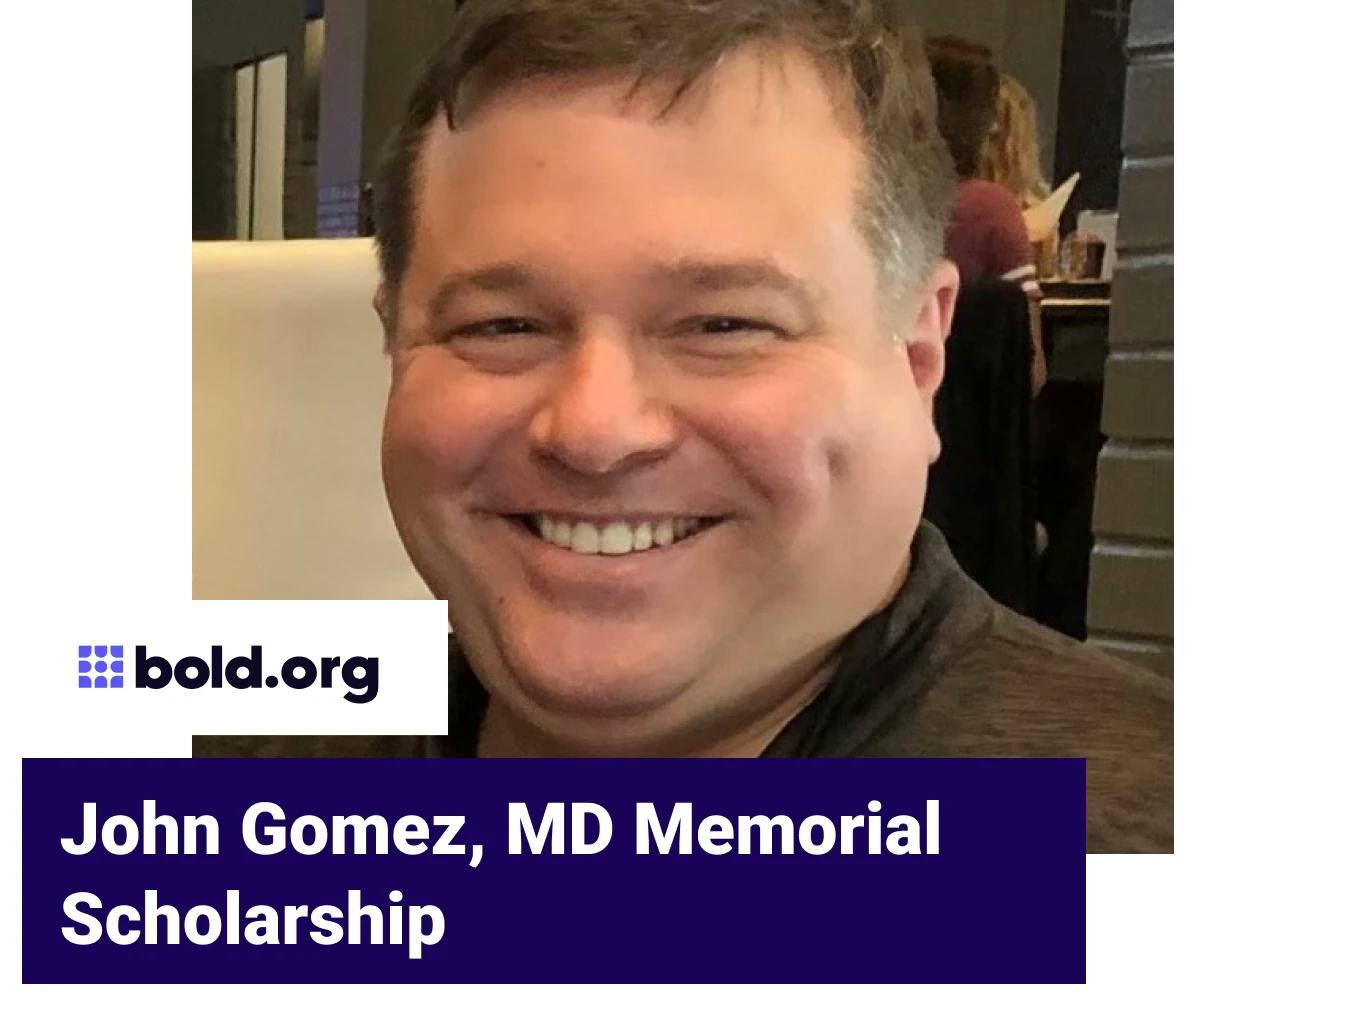 John Gomez, MD Memorial Scholarship